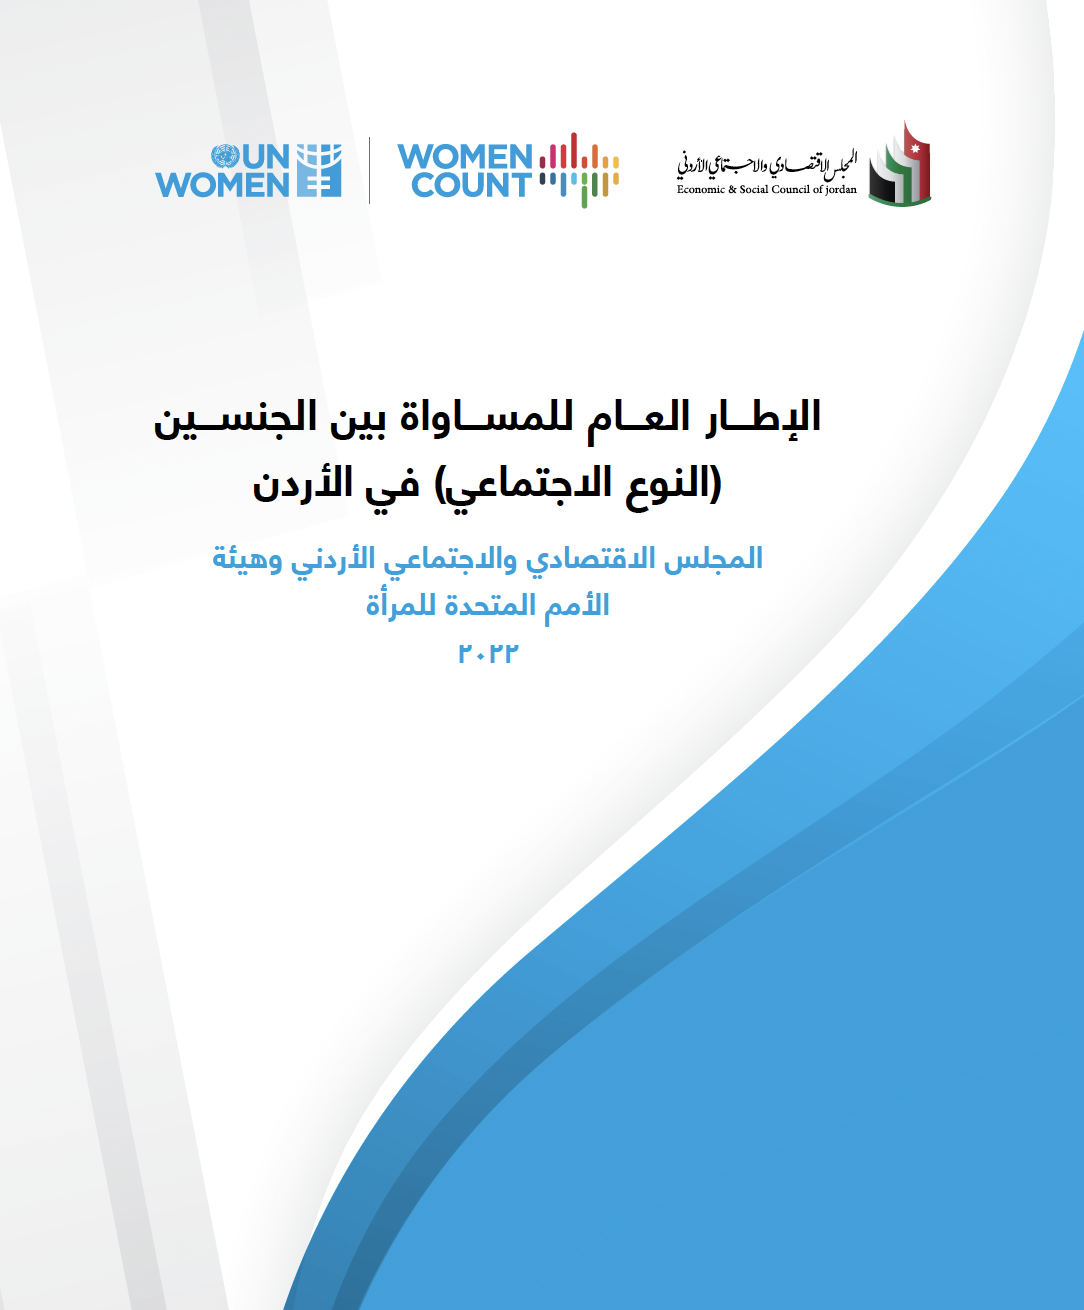 General Framework for Gender Equality in Jordan